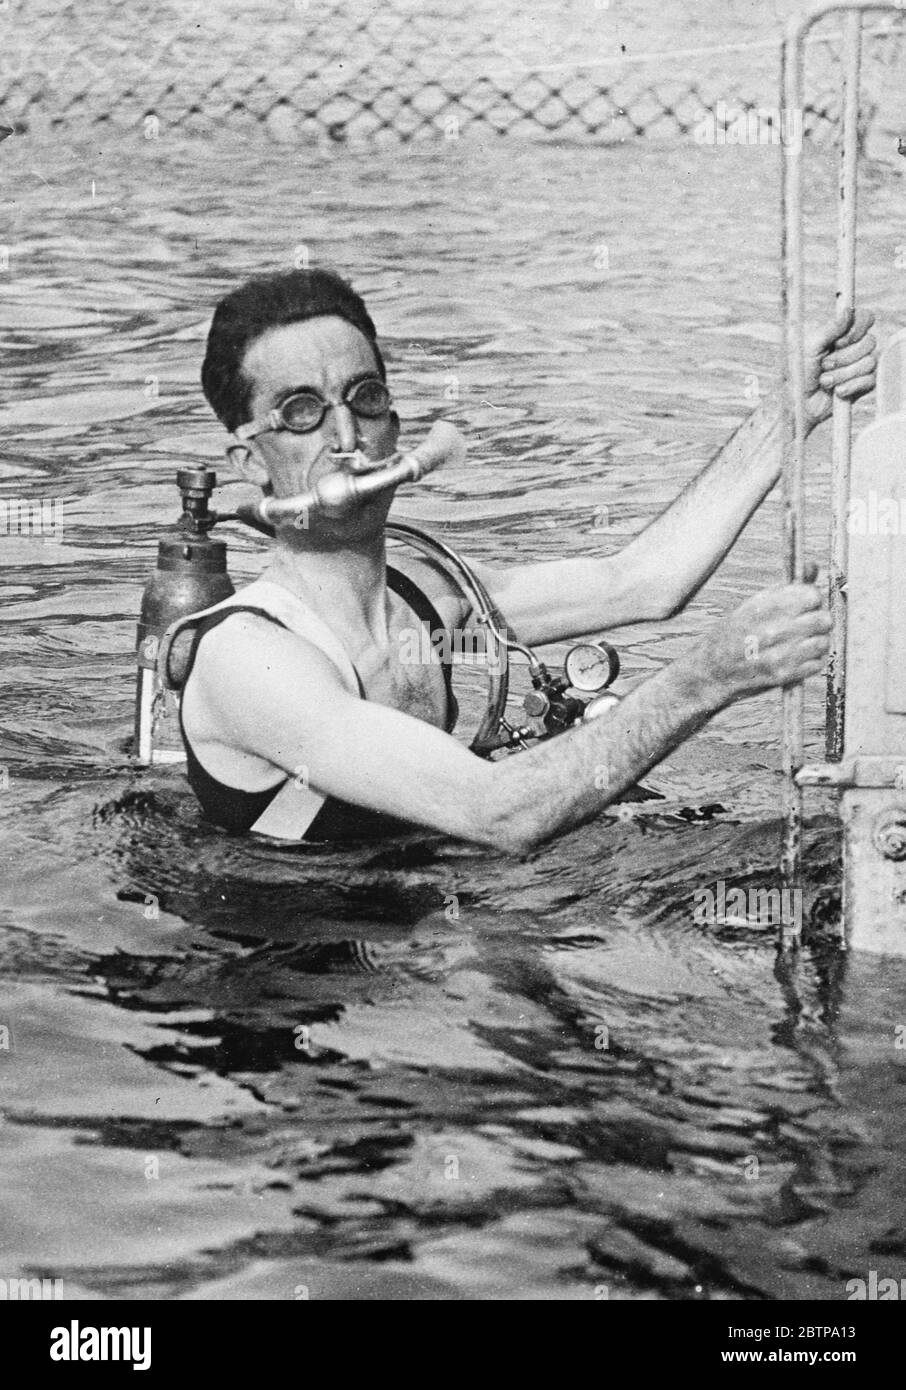 Robe de plongée légère . Un appareil de plongée simplifié , qui permet à un homme de rester sous l'eau pendant 10 minutes sans autre équipement que l'appareil respiratoire attaché à son dos , a été inventé par le Capt Yves le Prieur , de la Marine française . 10 août 1926 Banque D'Images